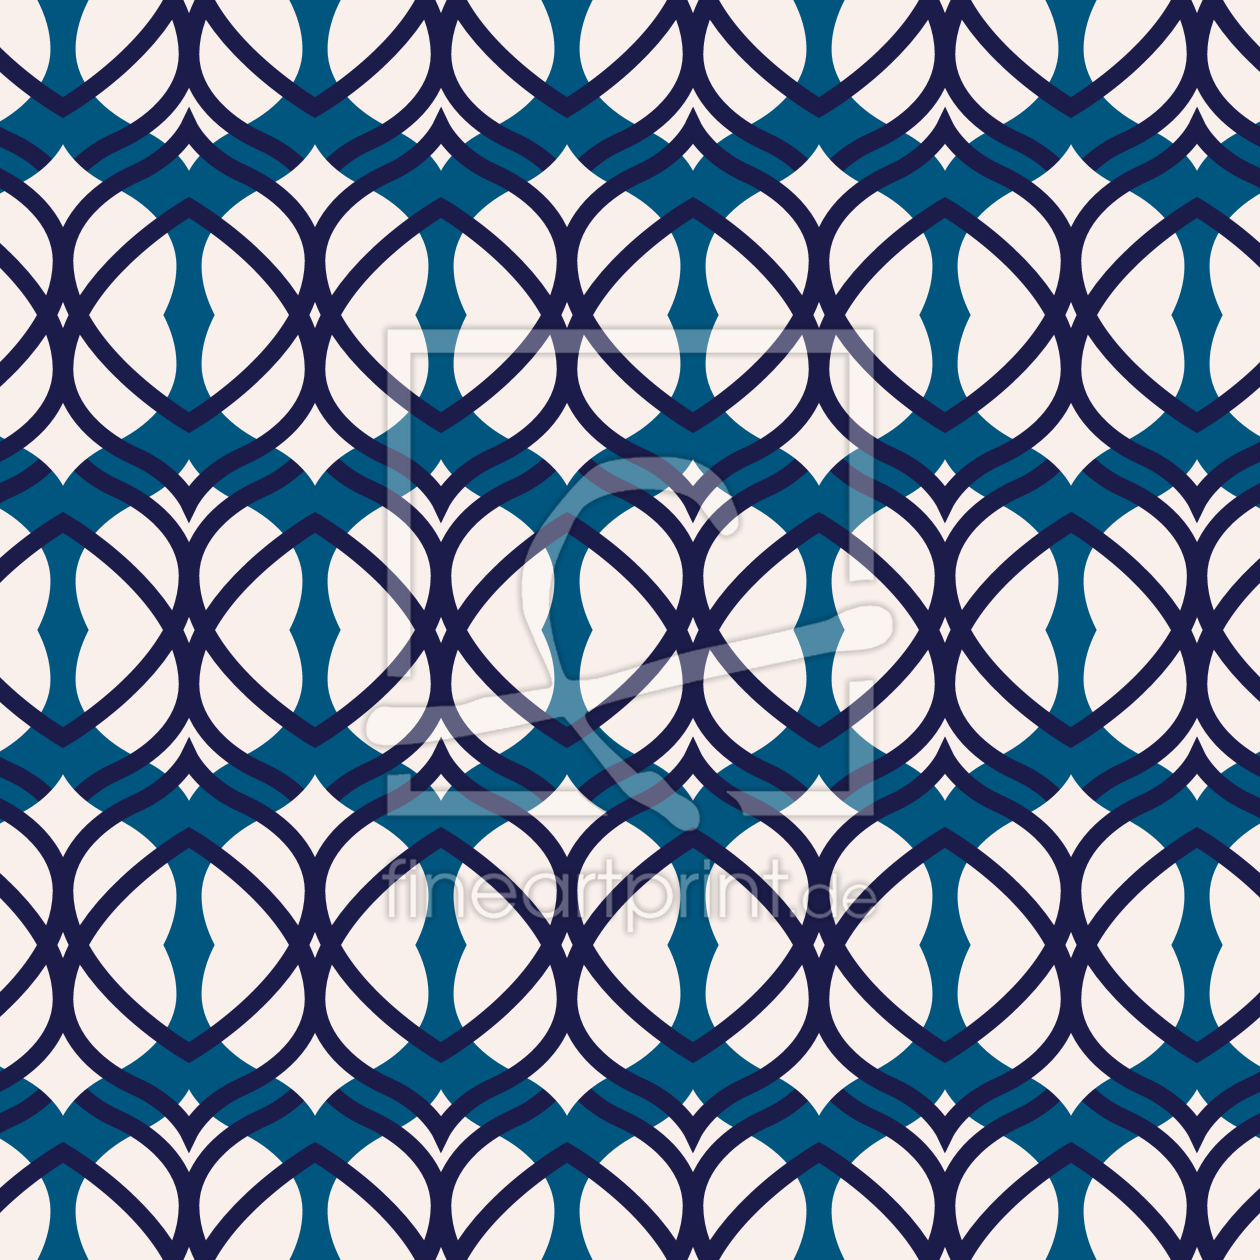 Bild-Nr.: 9013651 Abgerundete Formen in einem Netz erstellt von patterndesigns-com